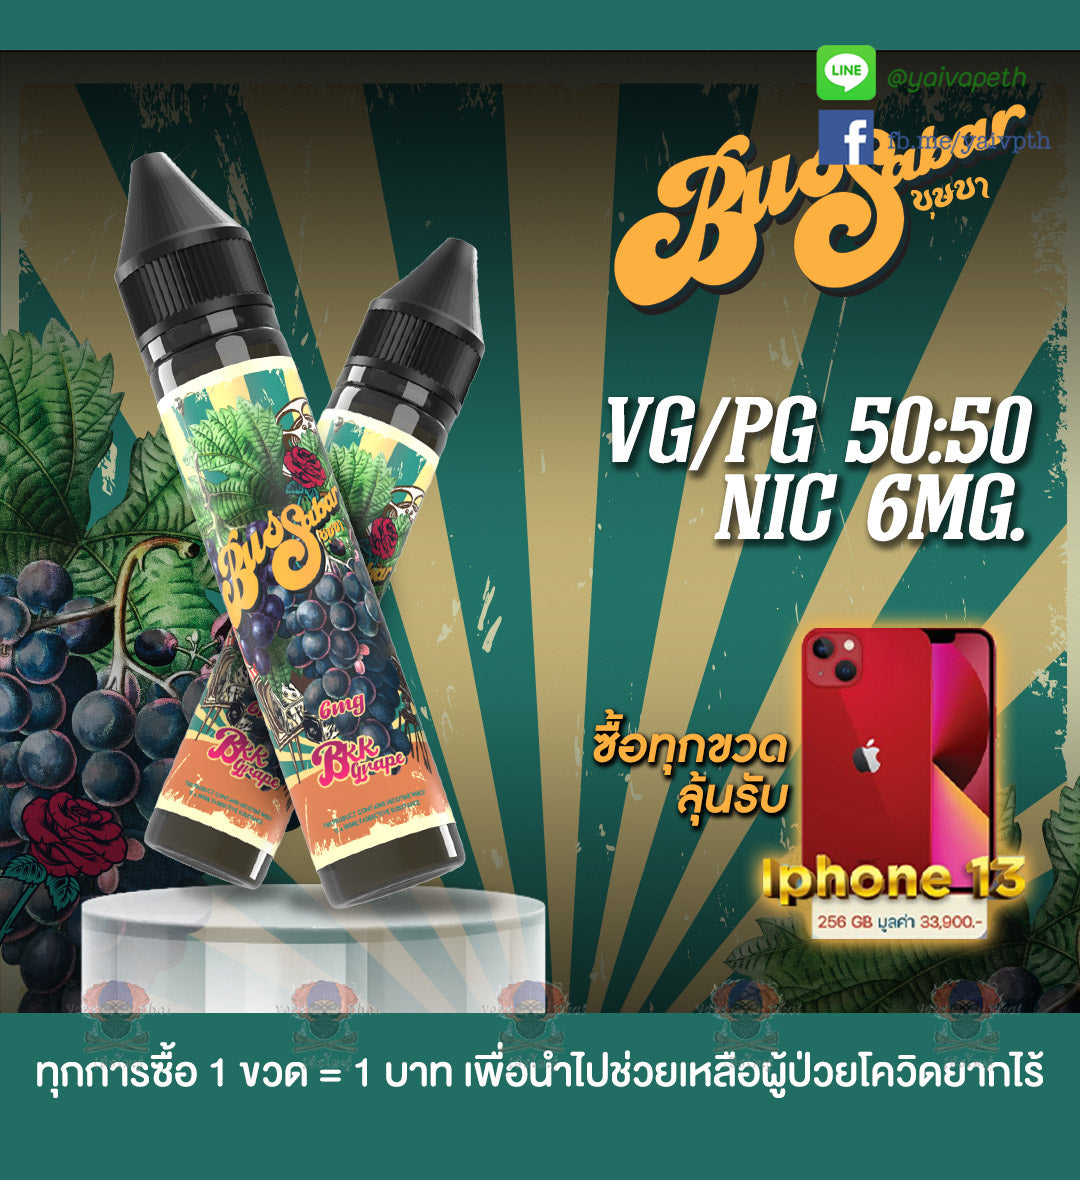 บุษบาองุ่น - น้ำยาบุหรี่ไฟฟ้า Bussabar BKK Grape 30 ml [เย็น] ของแท้ - YAIVAPETHAI  No.1